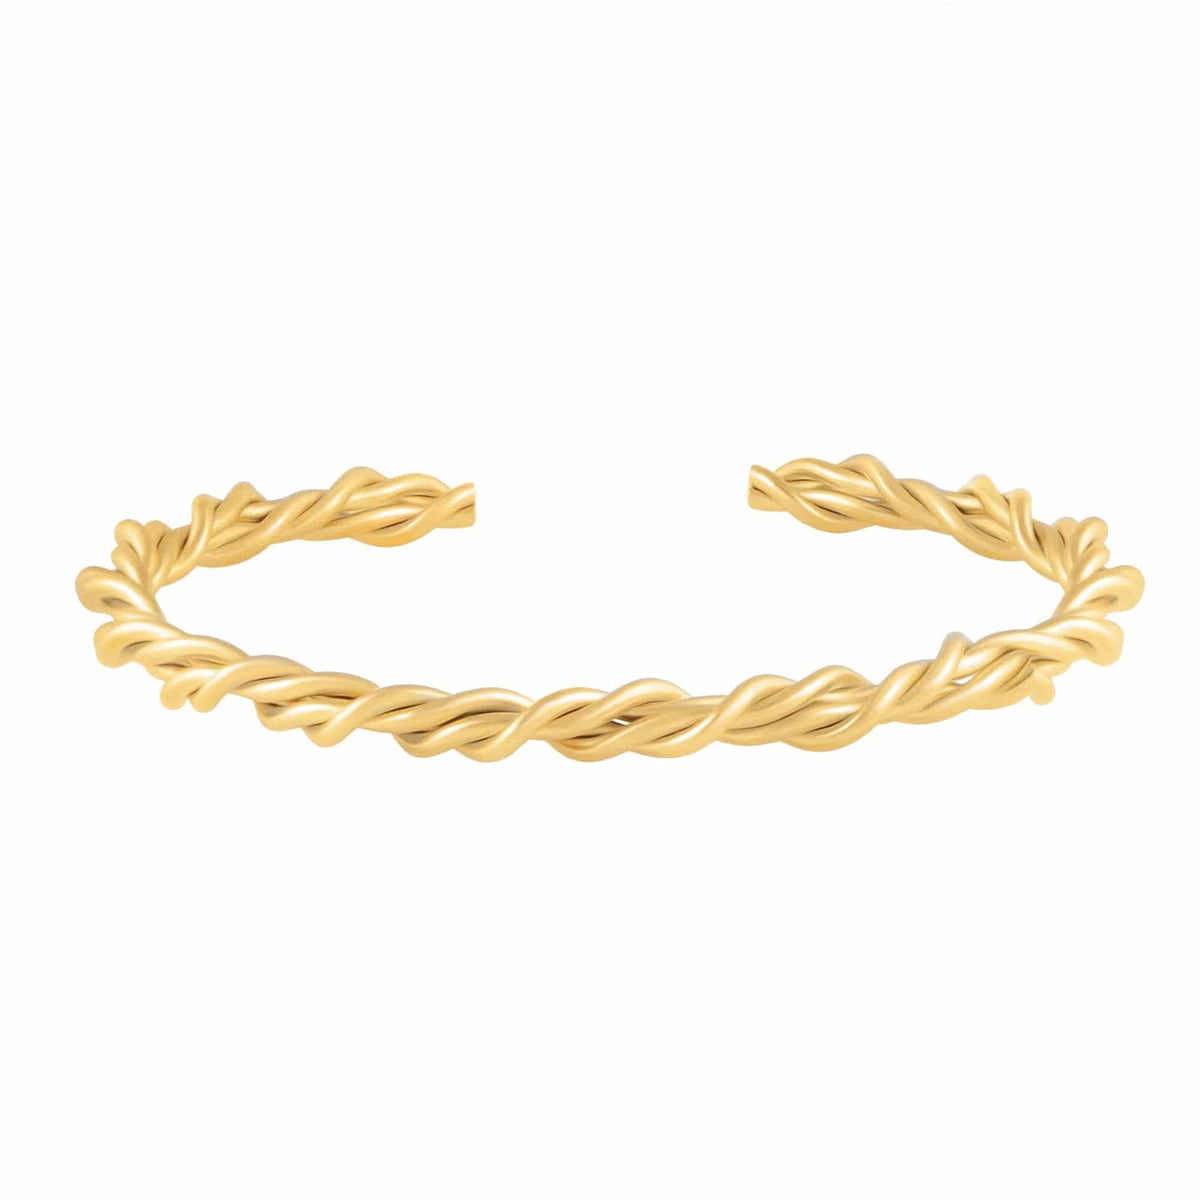 BohoMoon Stainless Steel Rhodes Cuff Bracelet Gold